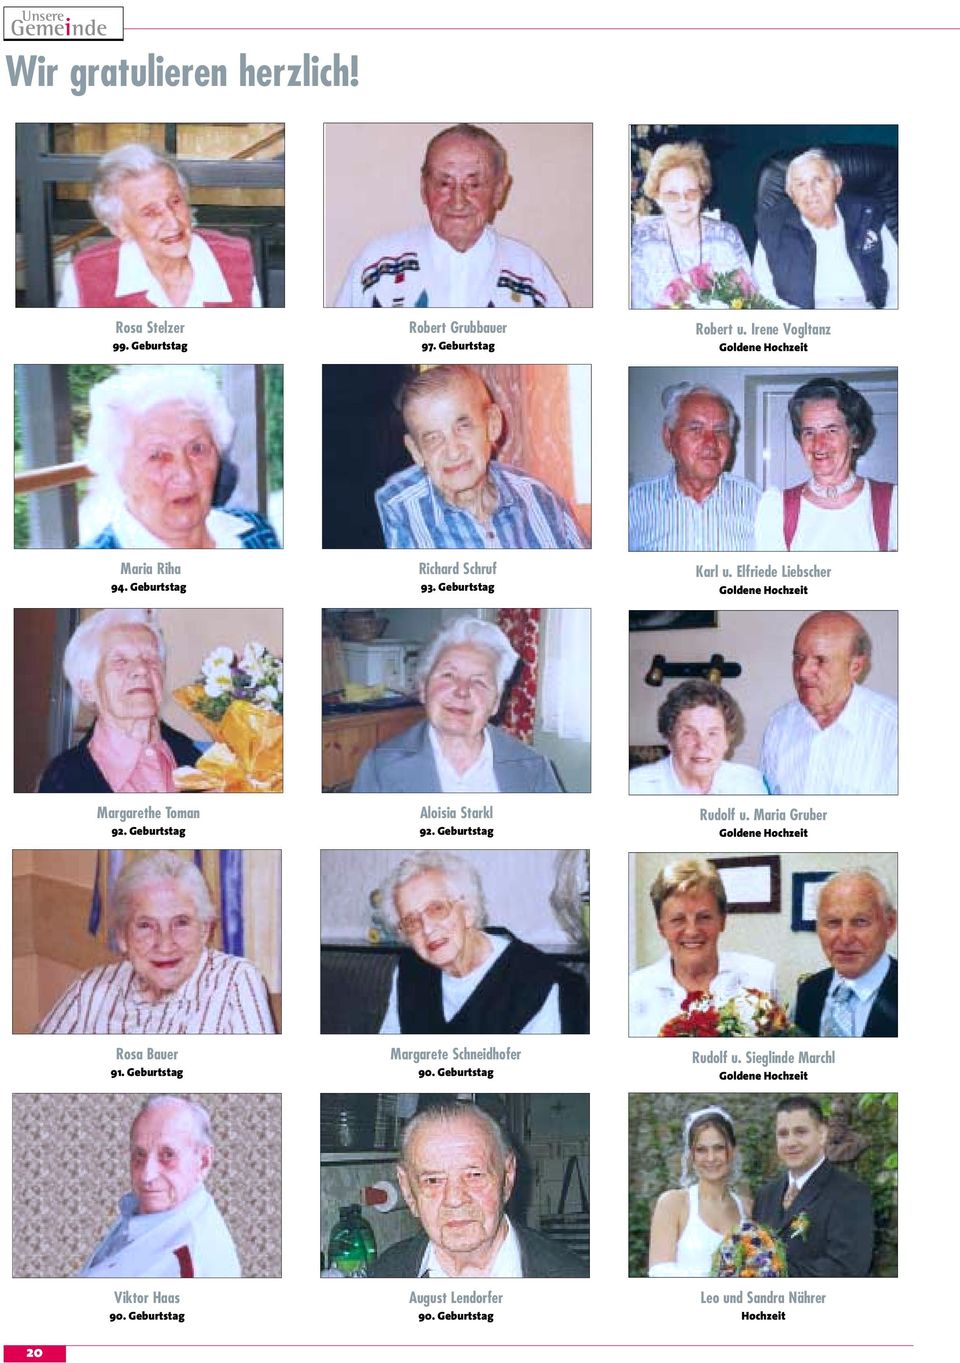 Elfriede Liebscher Goldene Hochzeit Margarethe Toman 92. Geburtstag Aloisia Starkl 92. Geburtstag Rudolf u.